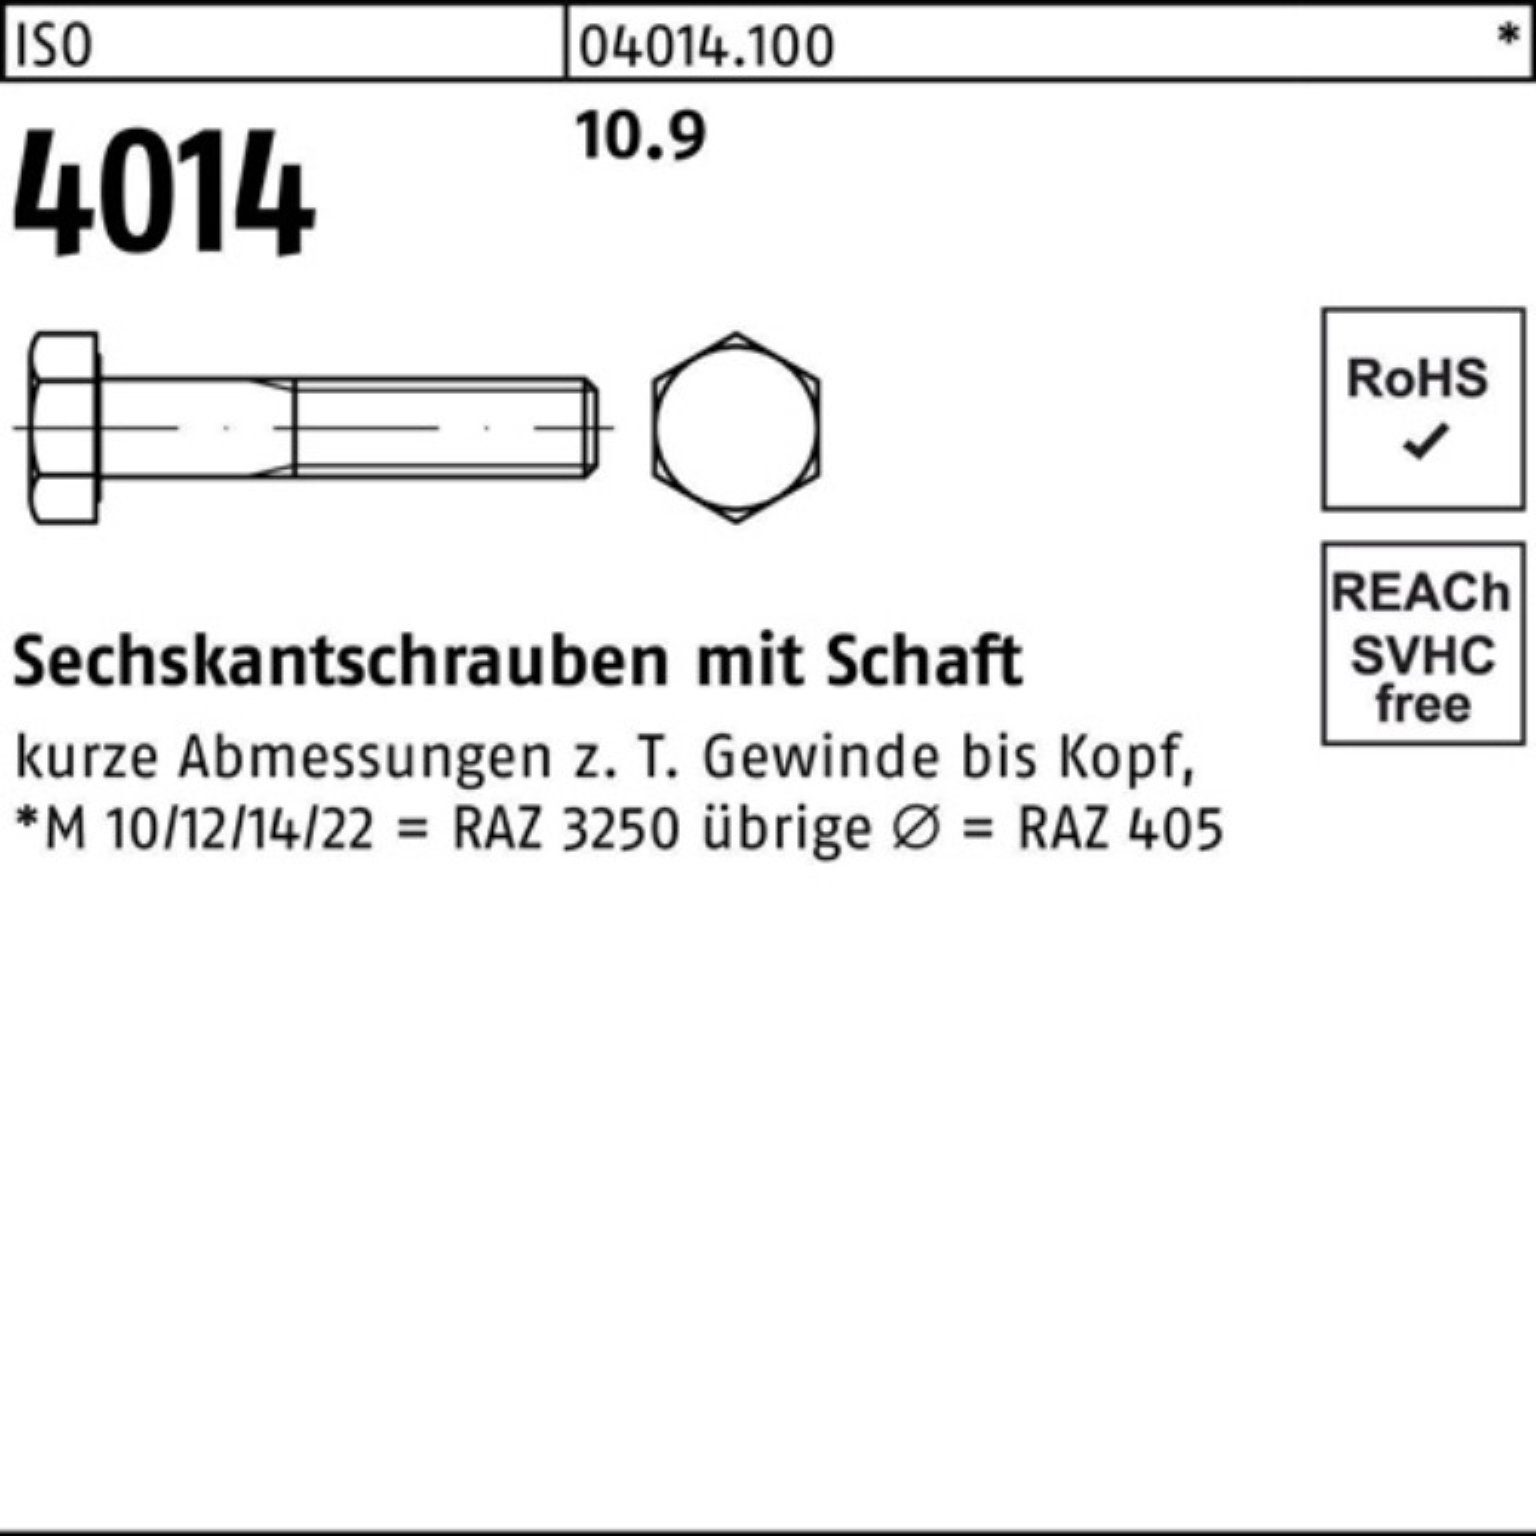 Pack 10.9 Sechskantschraube IS Sechskantschraube 100er Bufab Schaft 160 1 Stück 4014 ISO M39x